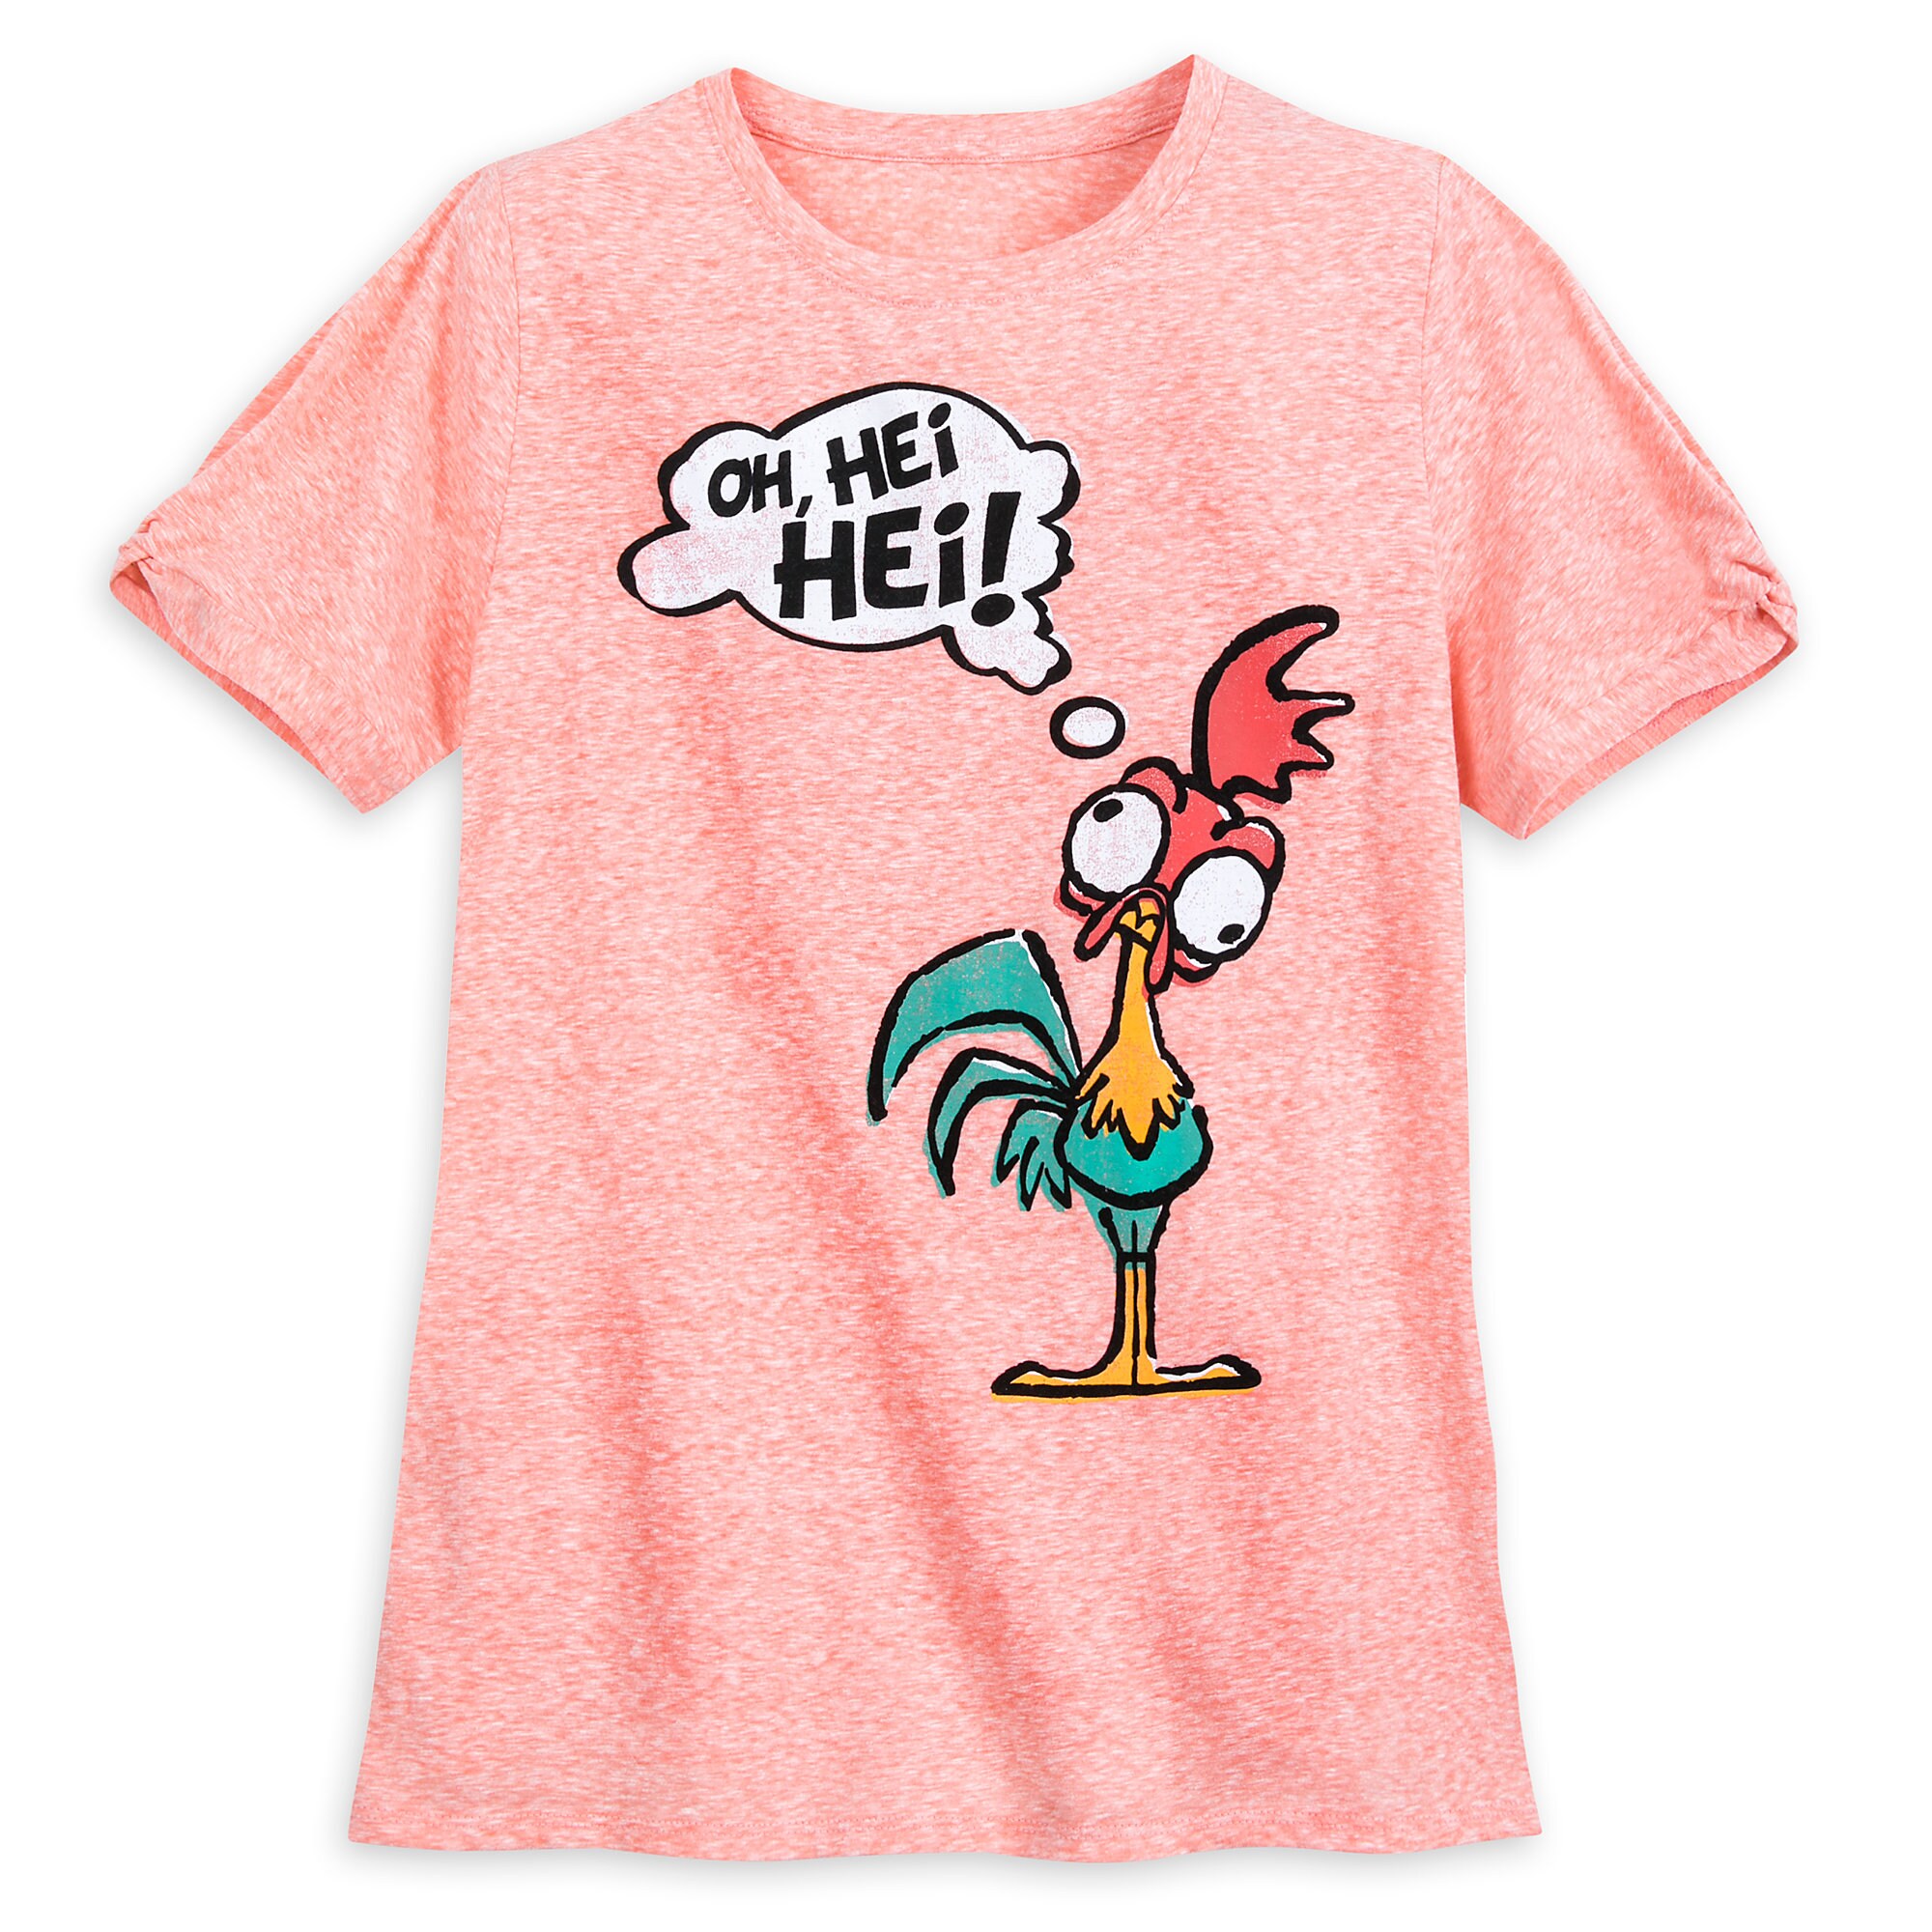 Hei Hei T-Shirt for Women - Moana